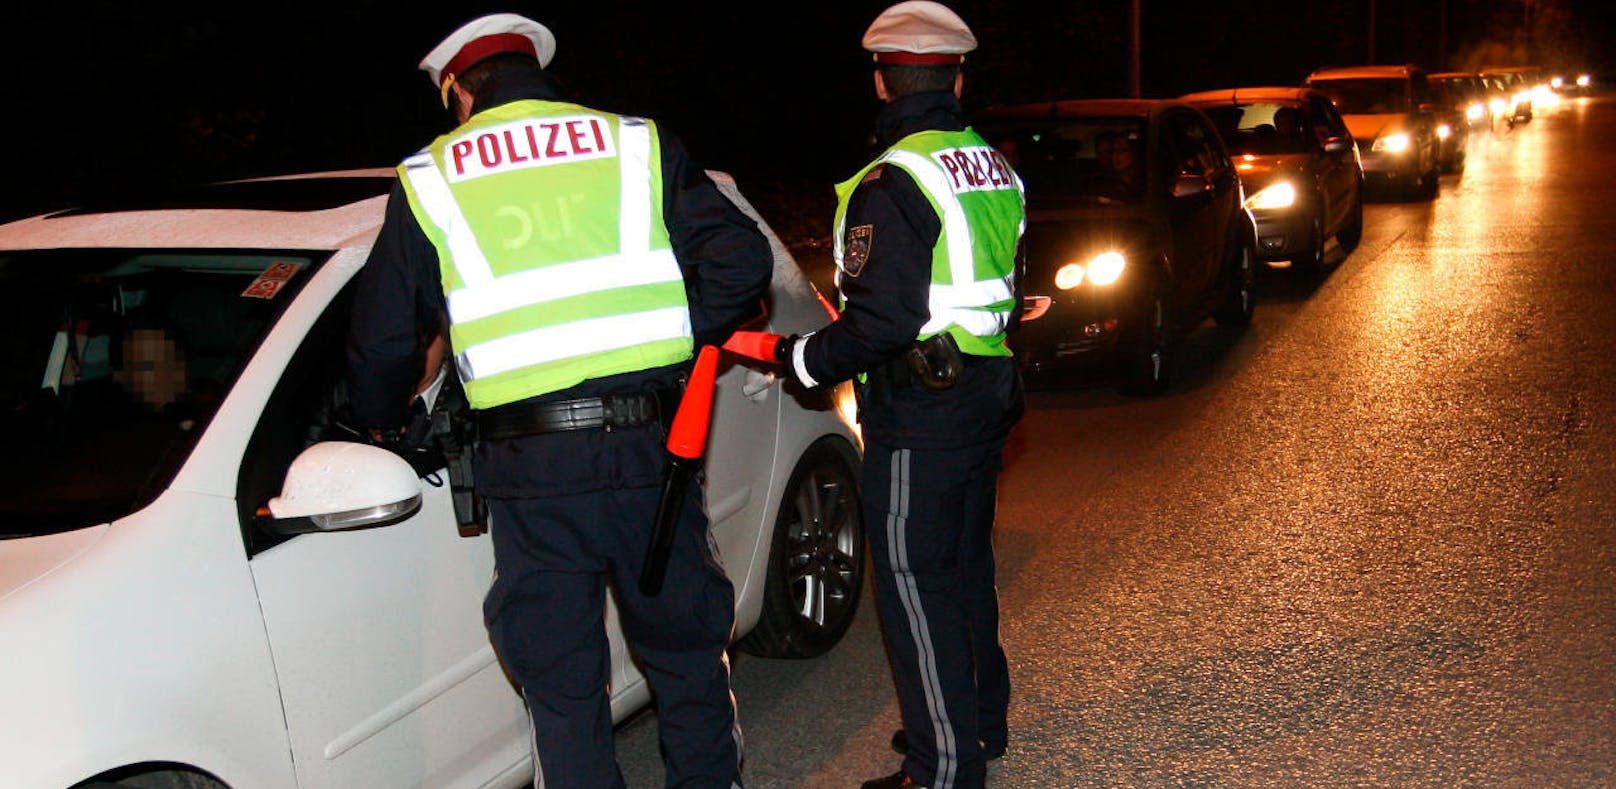 Die Polizeikontrollen wurden am Wochenende in Ried verstärkt.